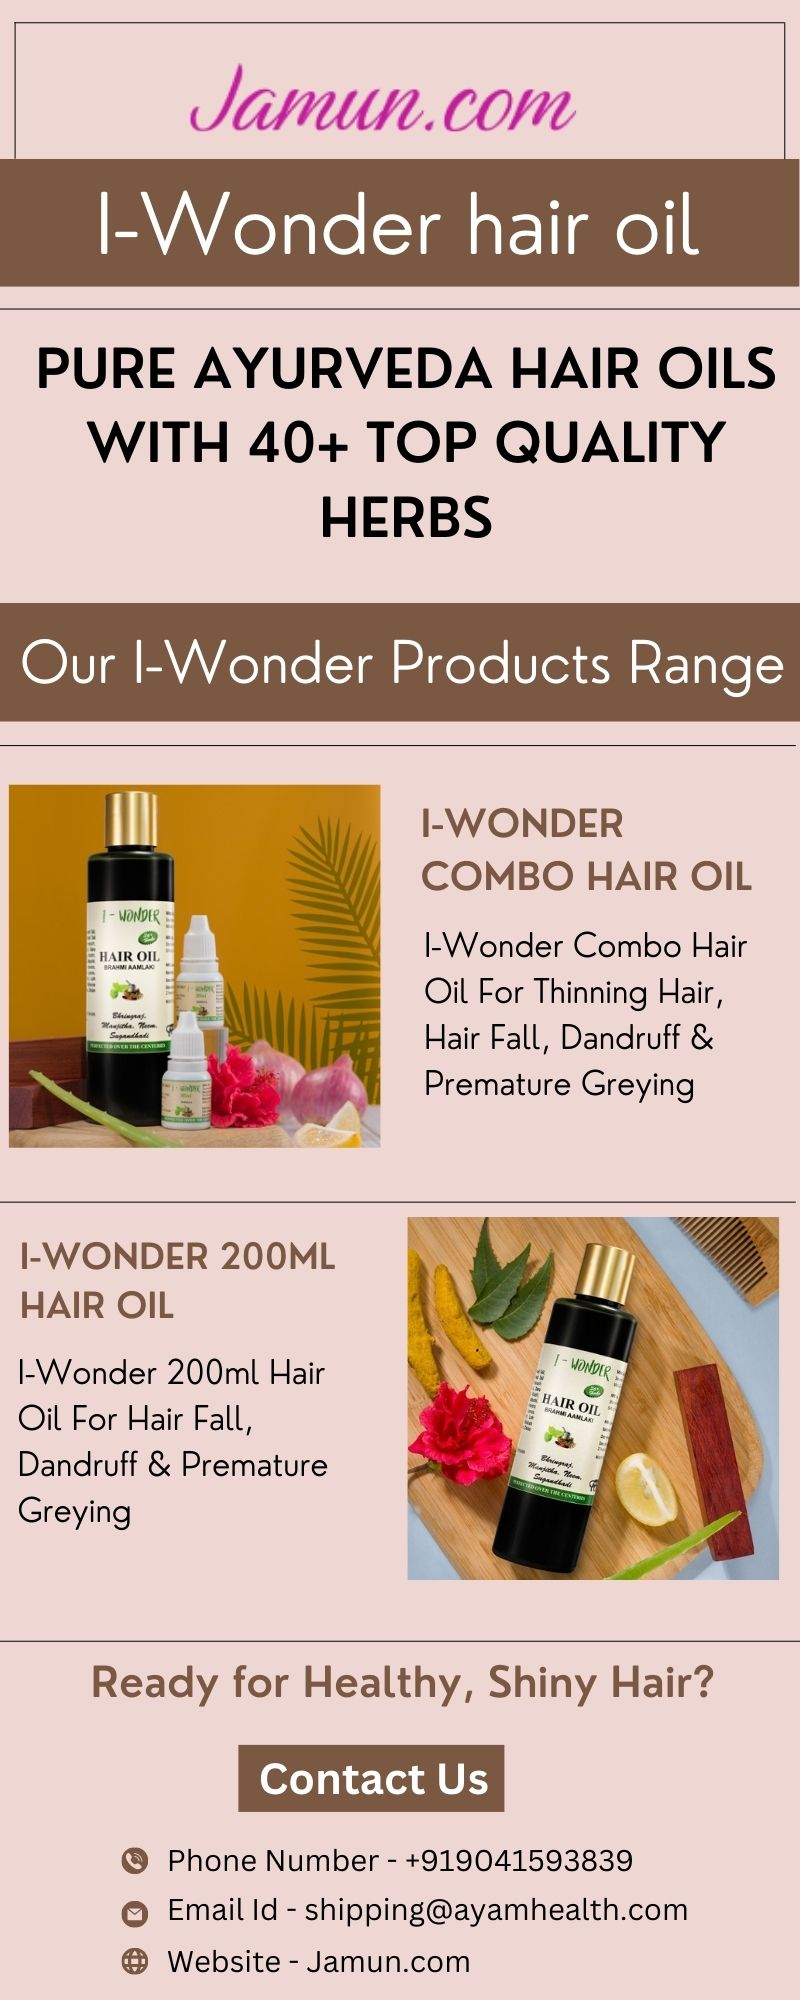 I-Wonder Ayurvedic Oil for Hair | Jamun